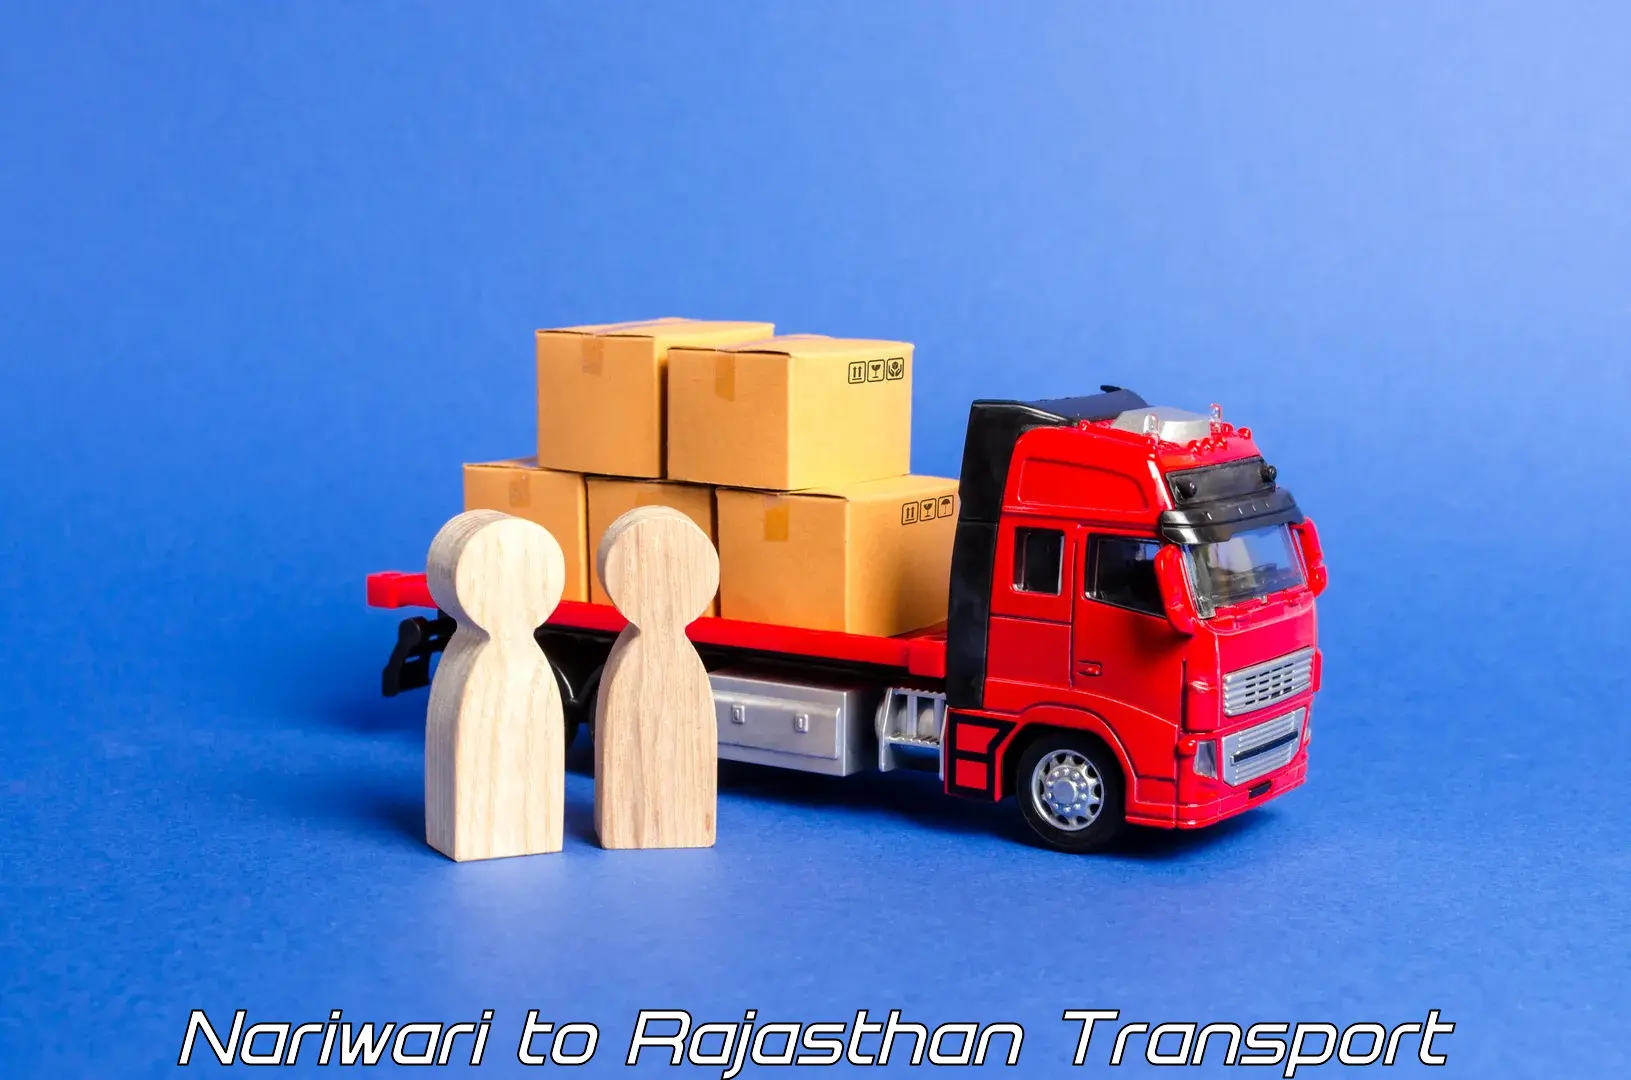 Container transport service Nariwari to Lohawat